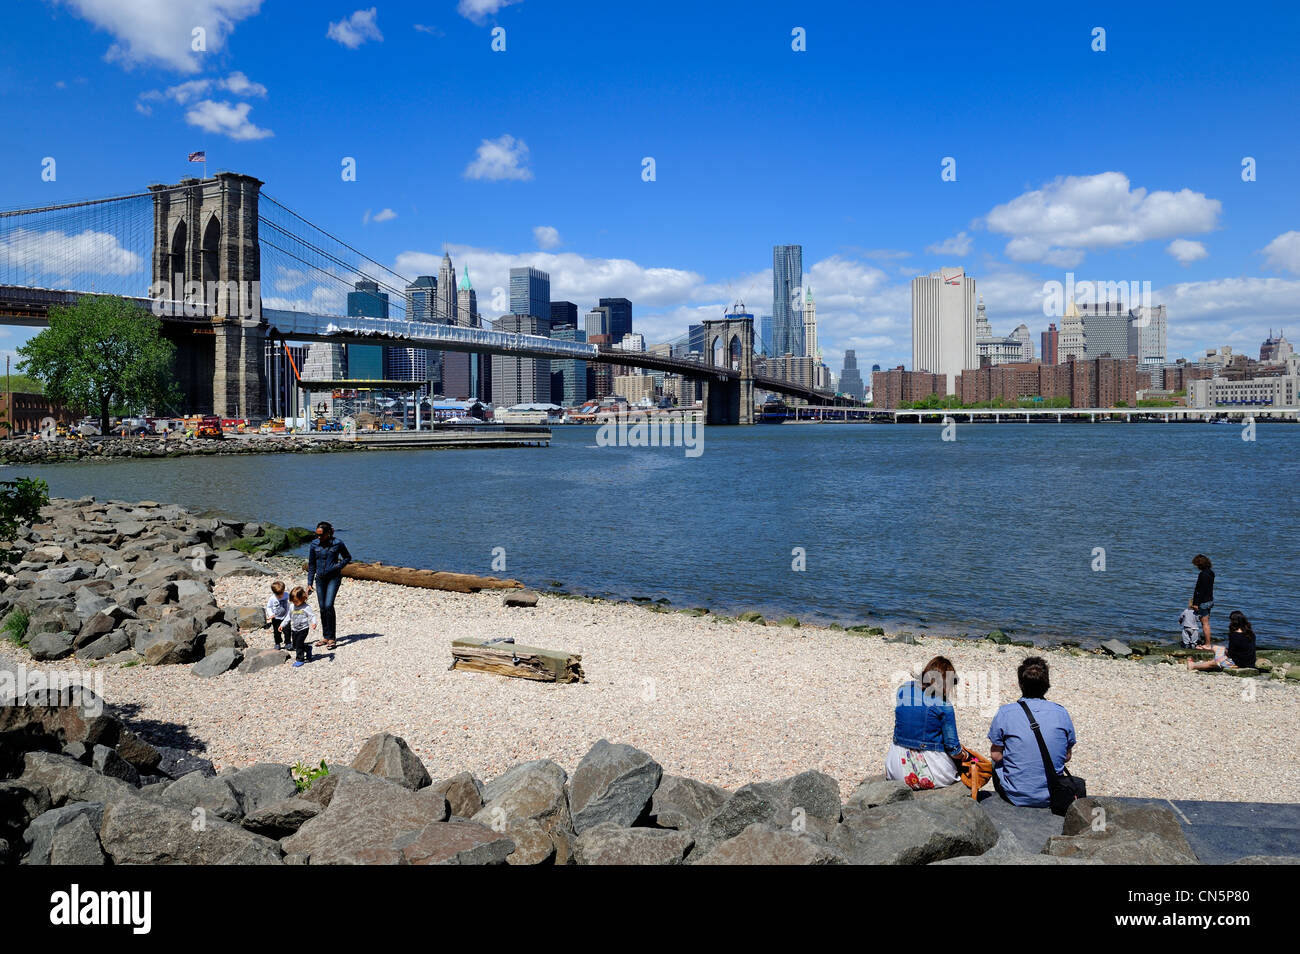 United States, New York, pont de Brooklyn de Brooklyn Bridge Park et le Beekman Tower de l'architecte Frank Gehry Banque D'Images